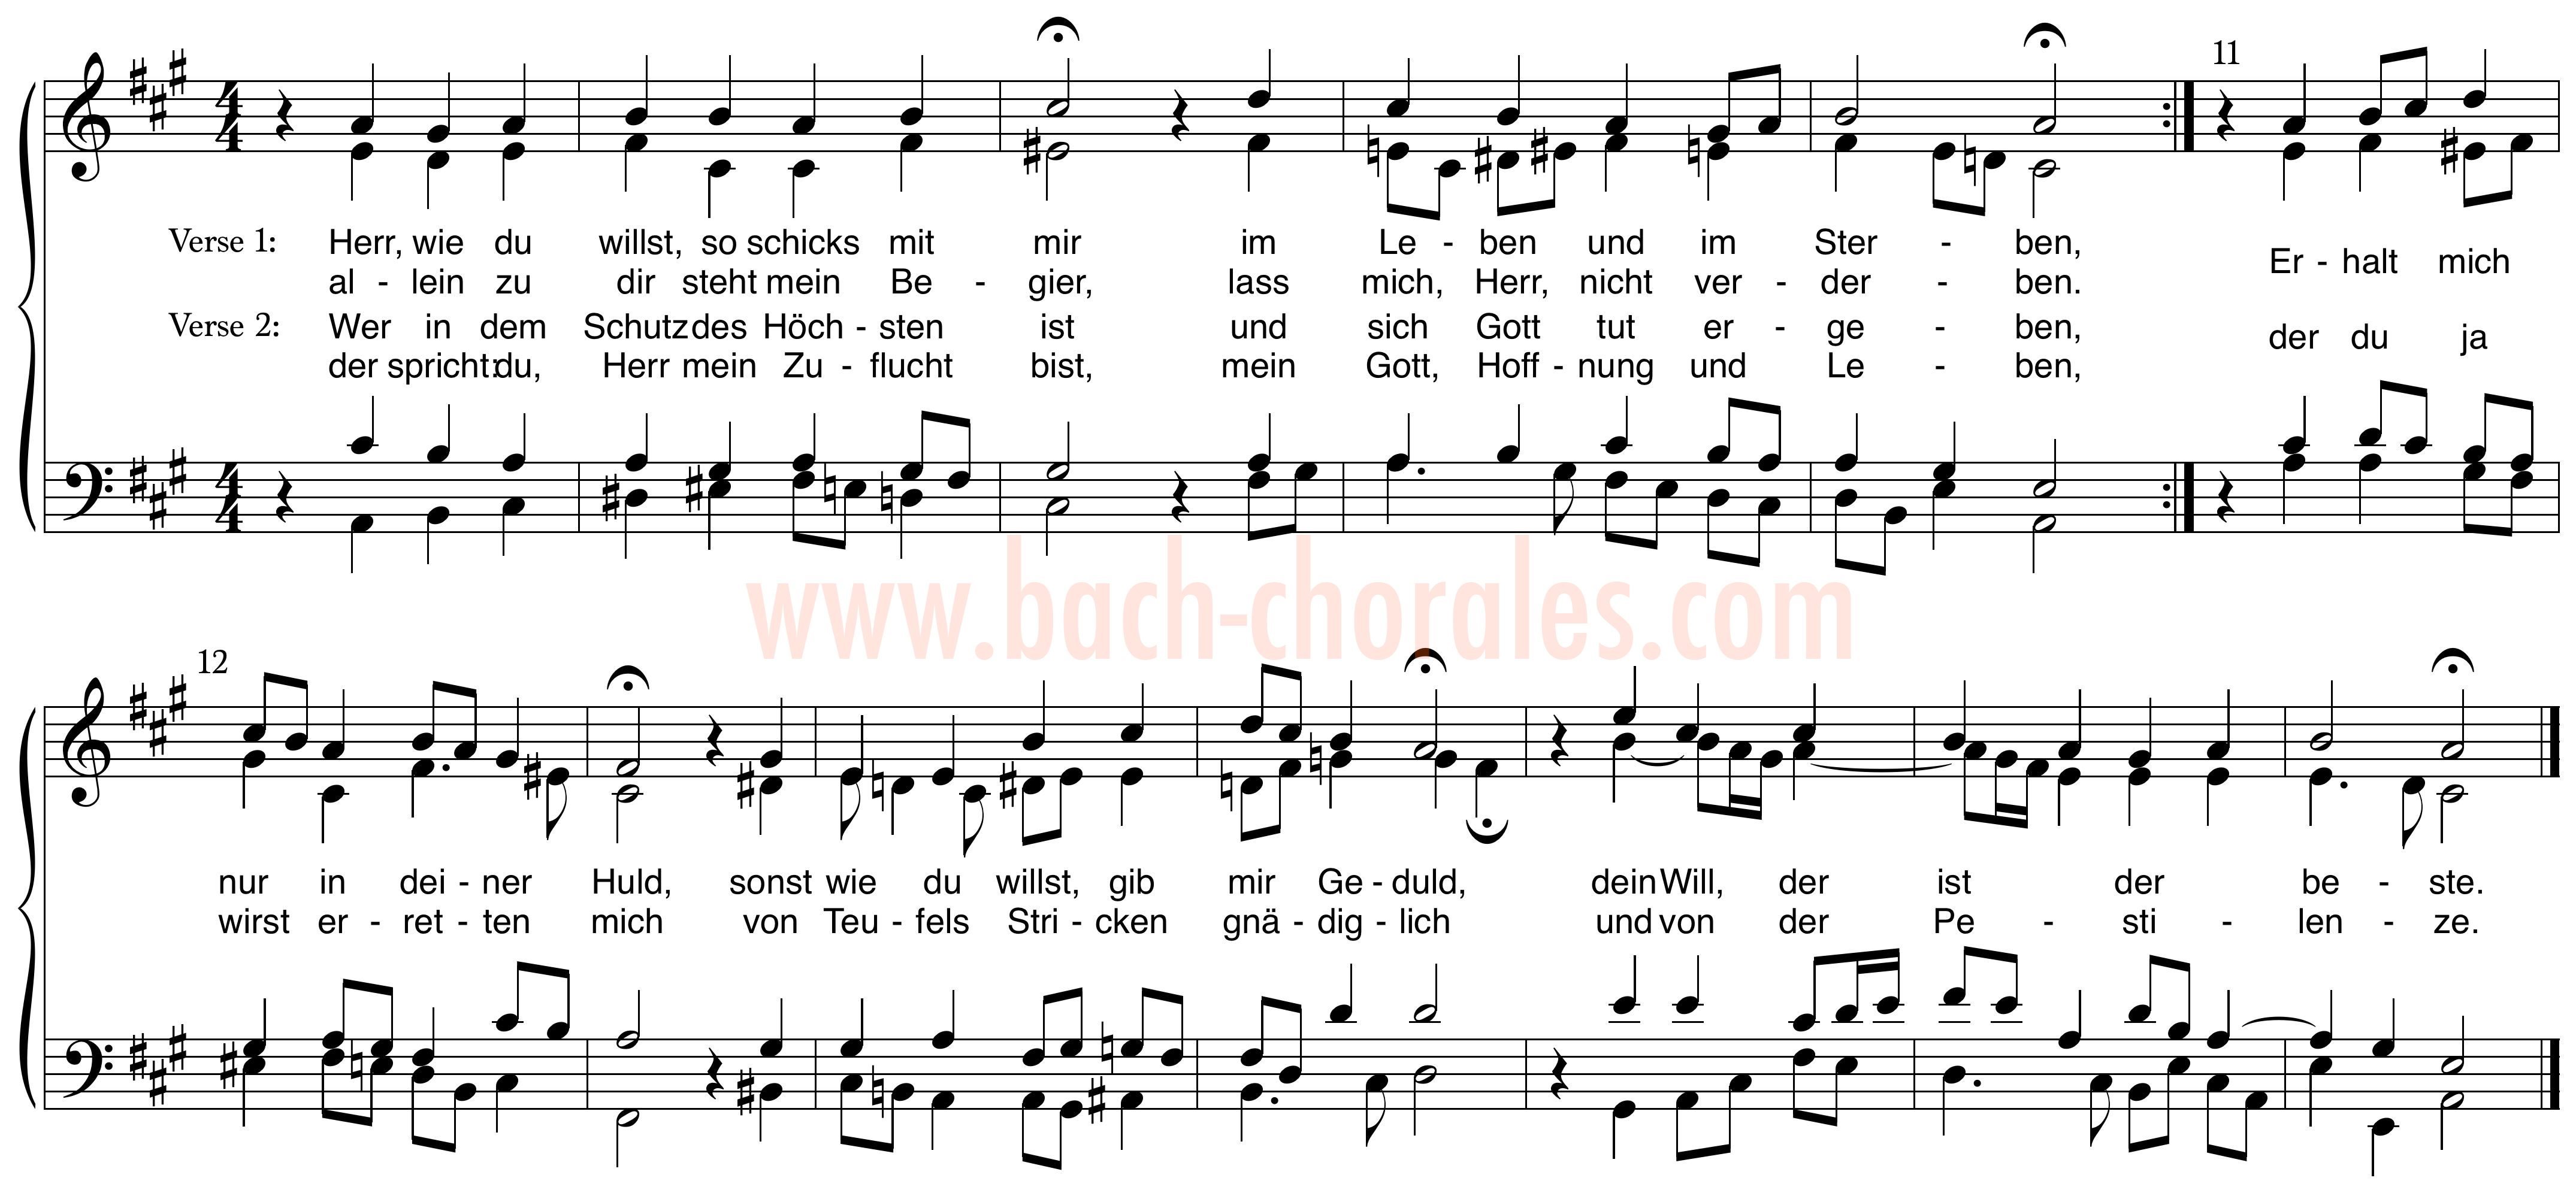 notenbeeld BWV 339 op https://www.bach-chorales.com/